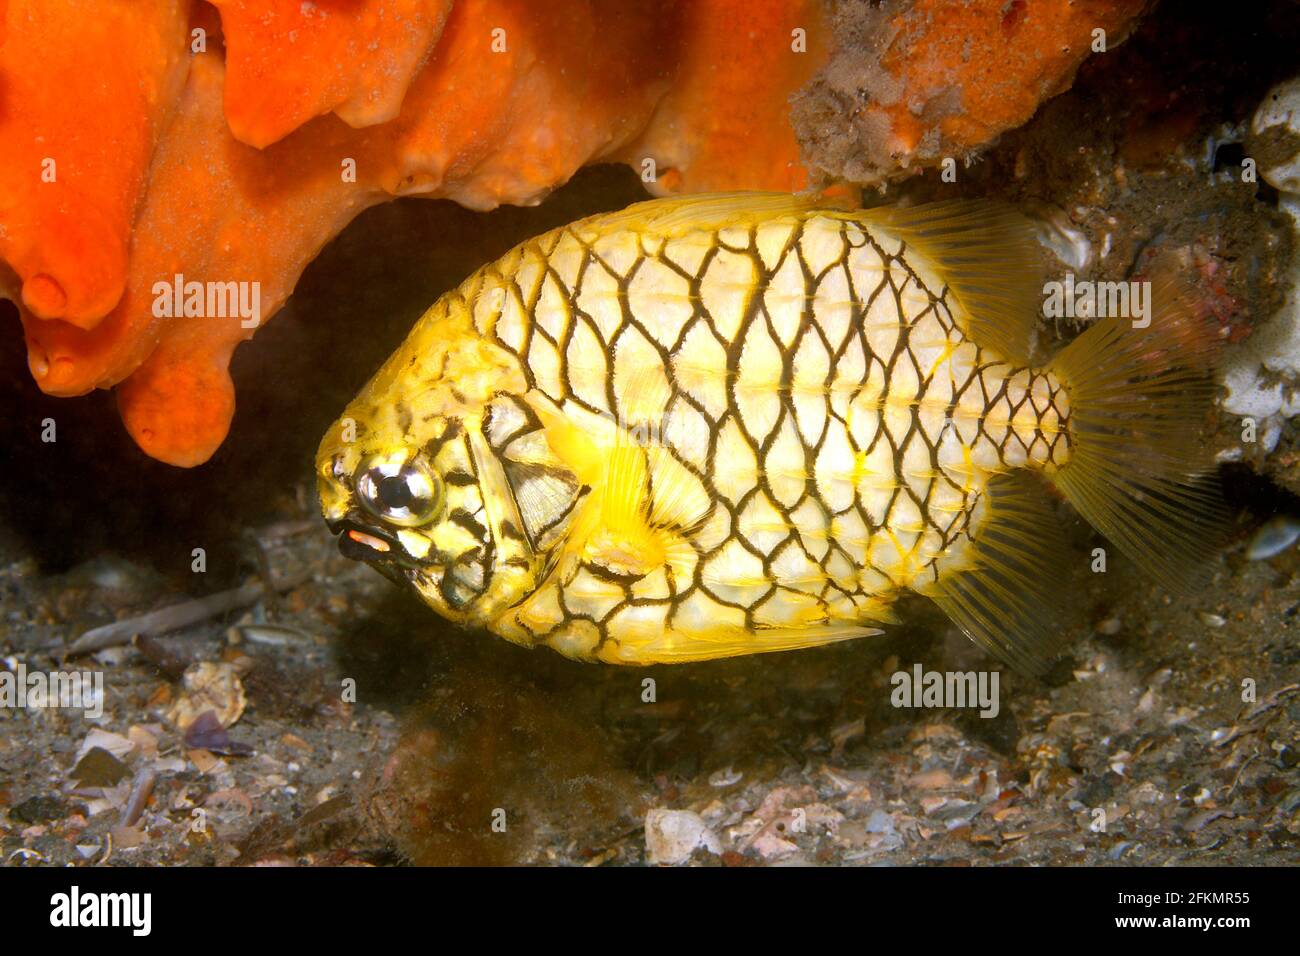 El pineapplefish, Cleidopus gloriamaris, también conocido como el pez caballero. Tiene un par de órganos bioluminiscentes rojos debajo de cada ojo en la mandíbula inferior. Foto de stock